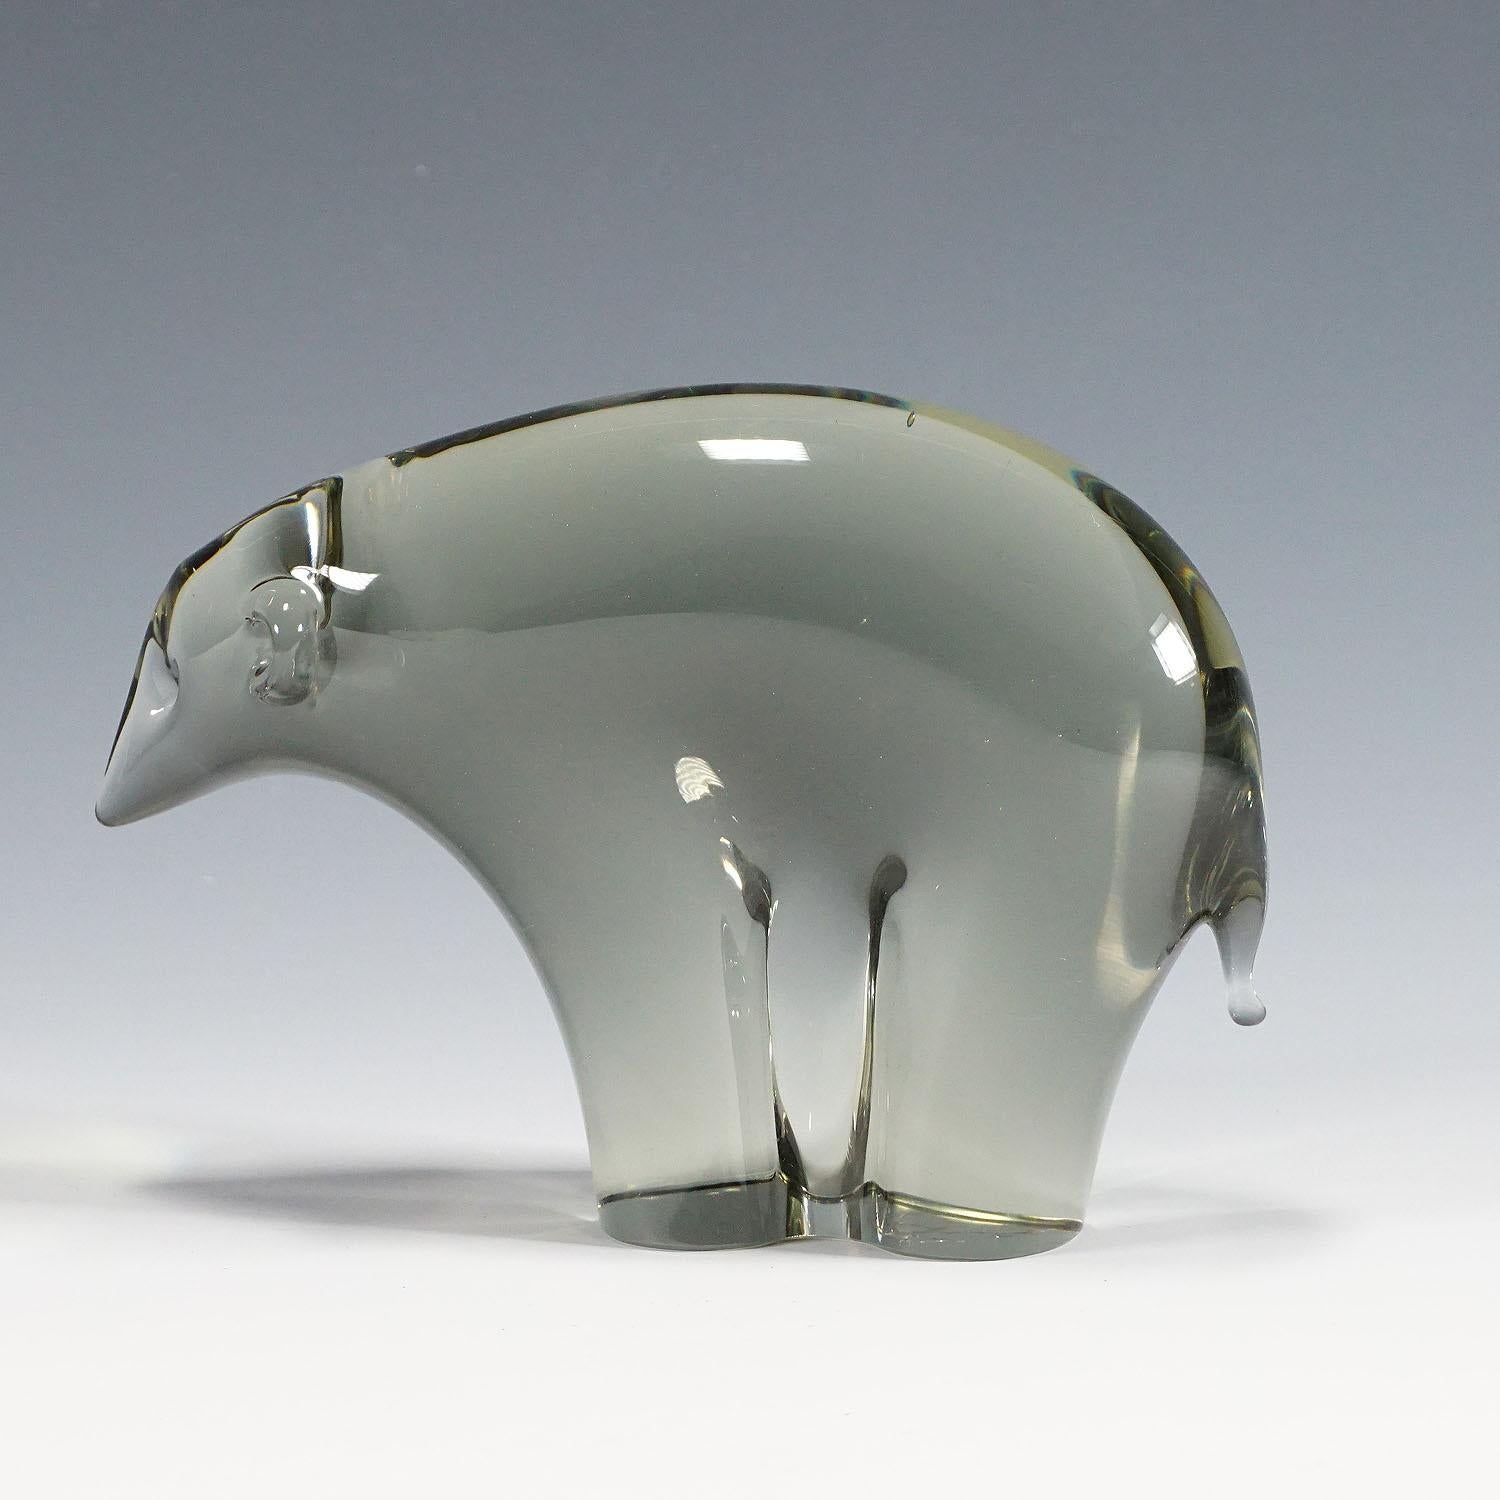 Sculpture d'un ours de glace stylisé en verre gris fumée. Fabriqué à la main dans la manufacture de verre Gral, en Allemagne. Conçu par Livio Seguso vers 1970. Base avec signature incisée de l'artiste (LS).

Littré : gralglas informationen 8, livret